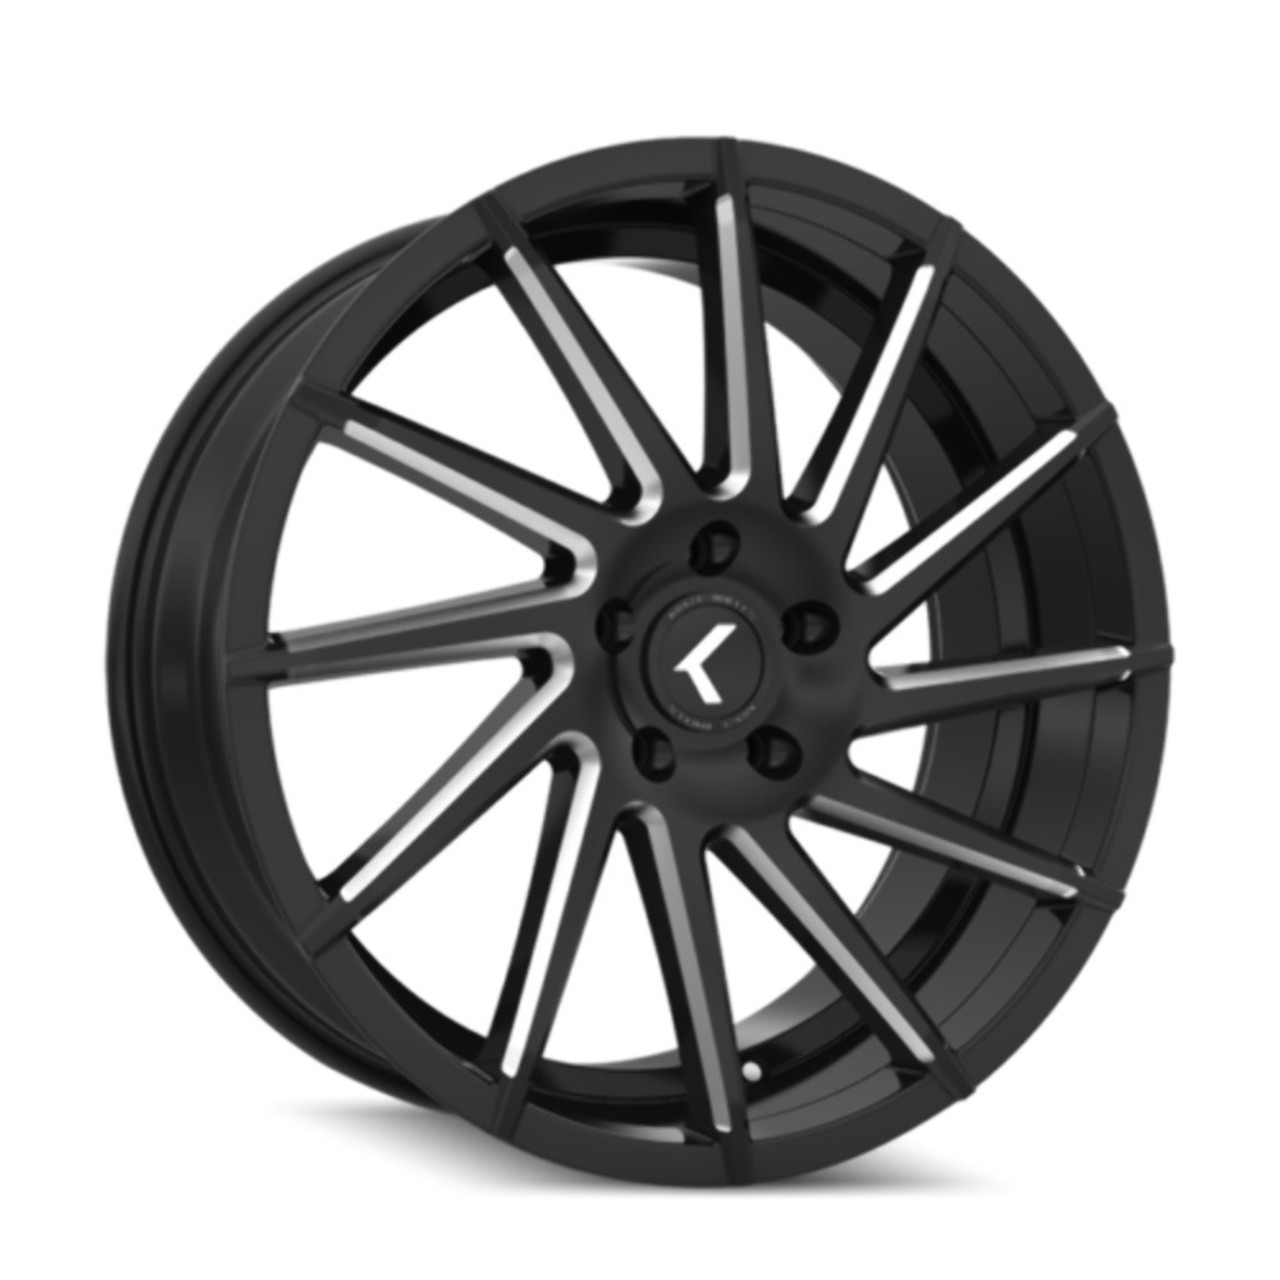 18" Kraze Spinner 18x8 Black Milled 5x120 Wheel 40mm Performance Rim